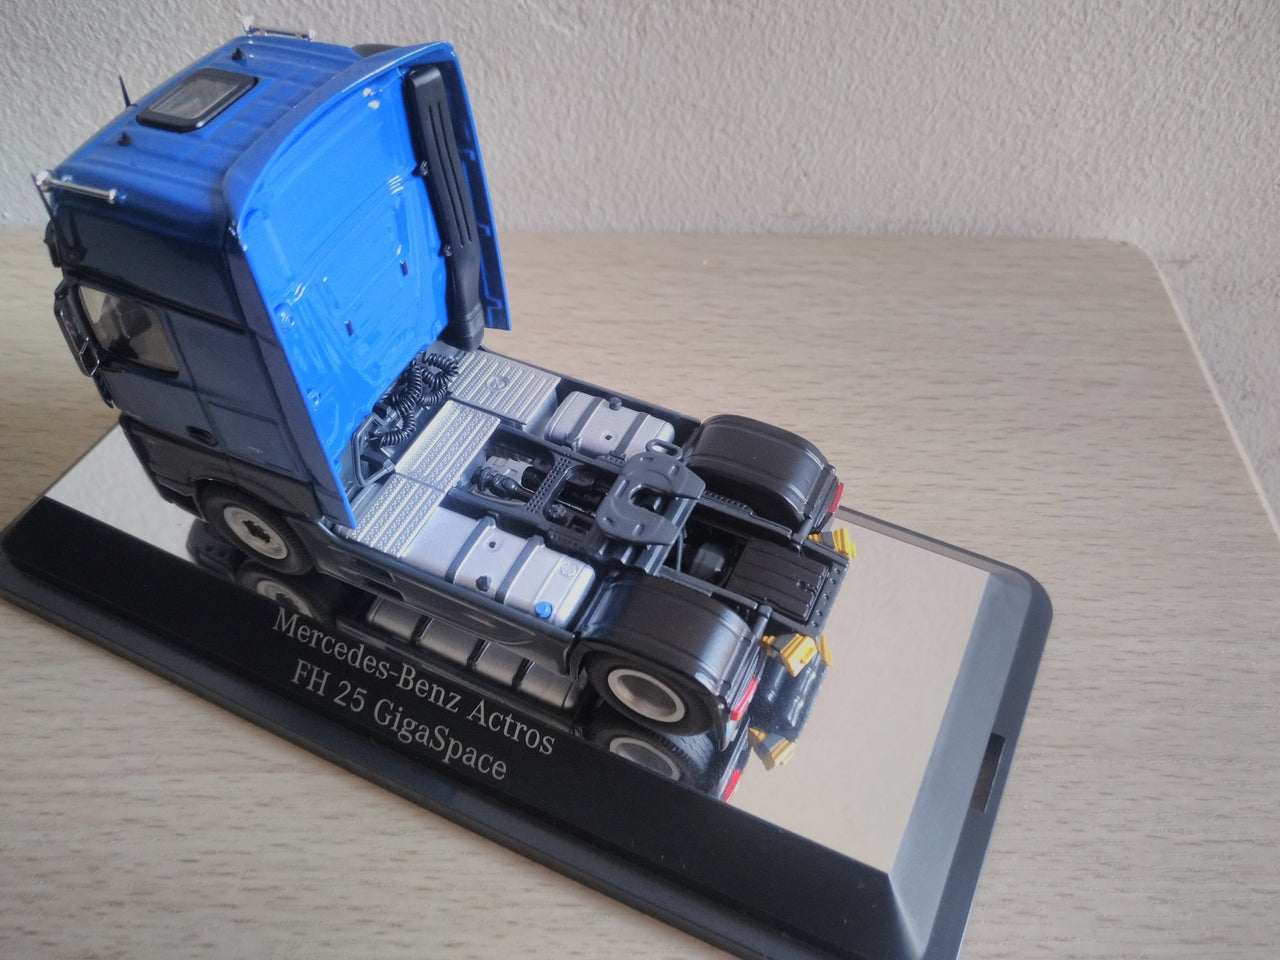 844-06 ट्रैक्टो मर्सिडीज-बेंज एक्ट्रोस एफएच25 ब्लू स्केल 1:50 (बंद मॉडल)